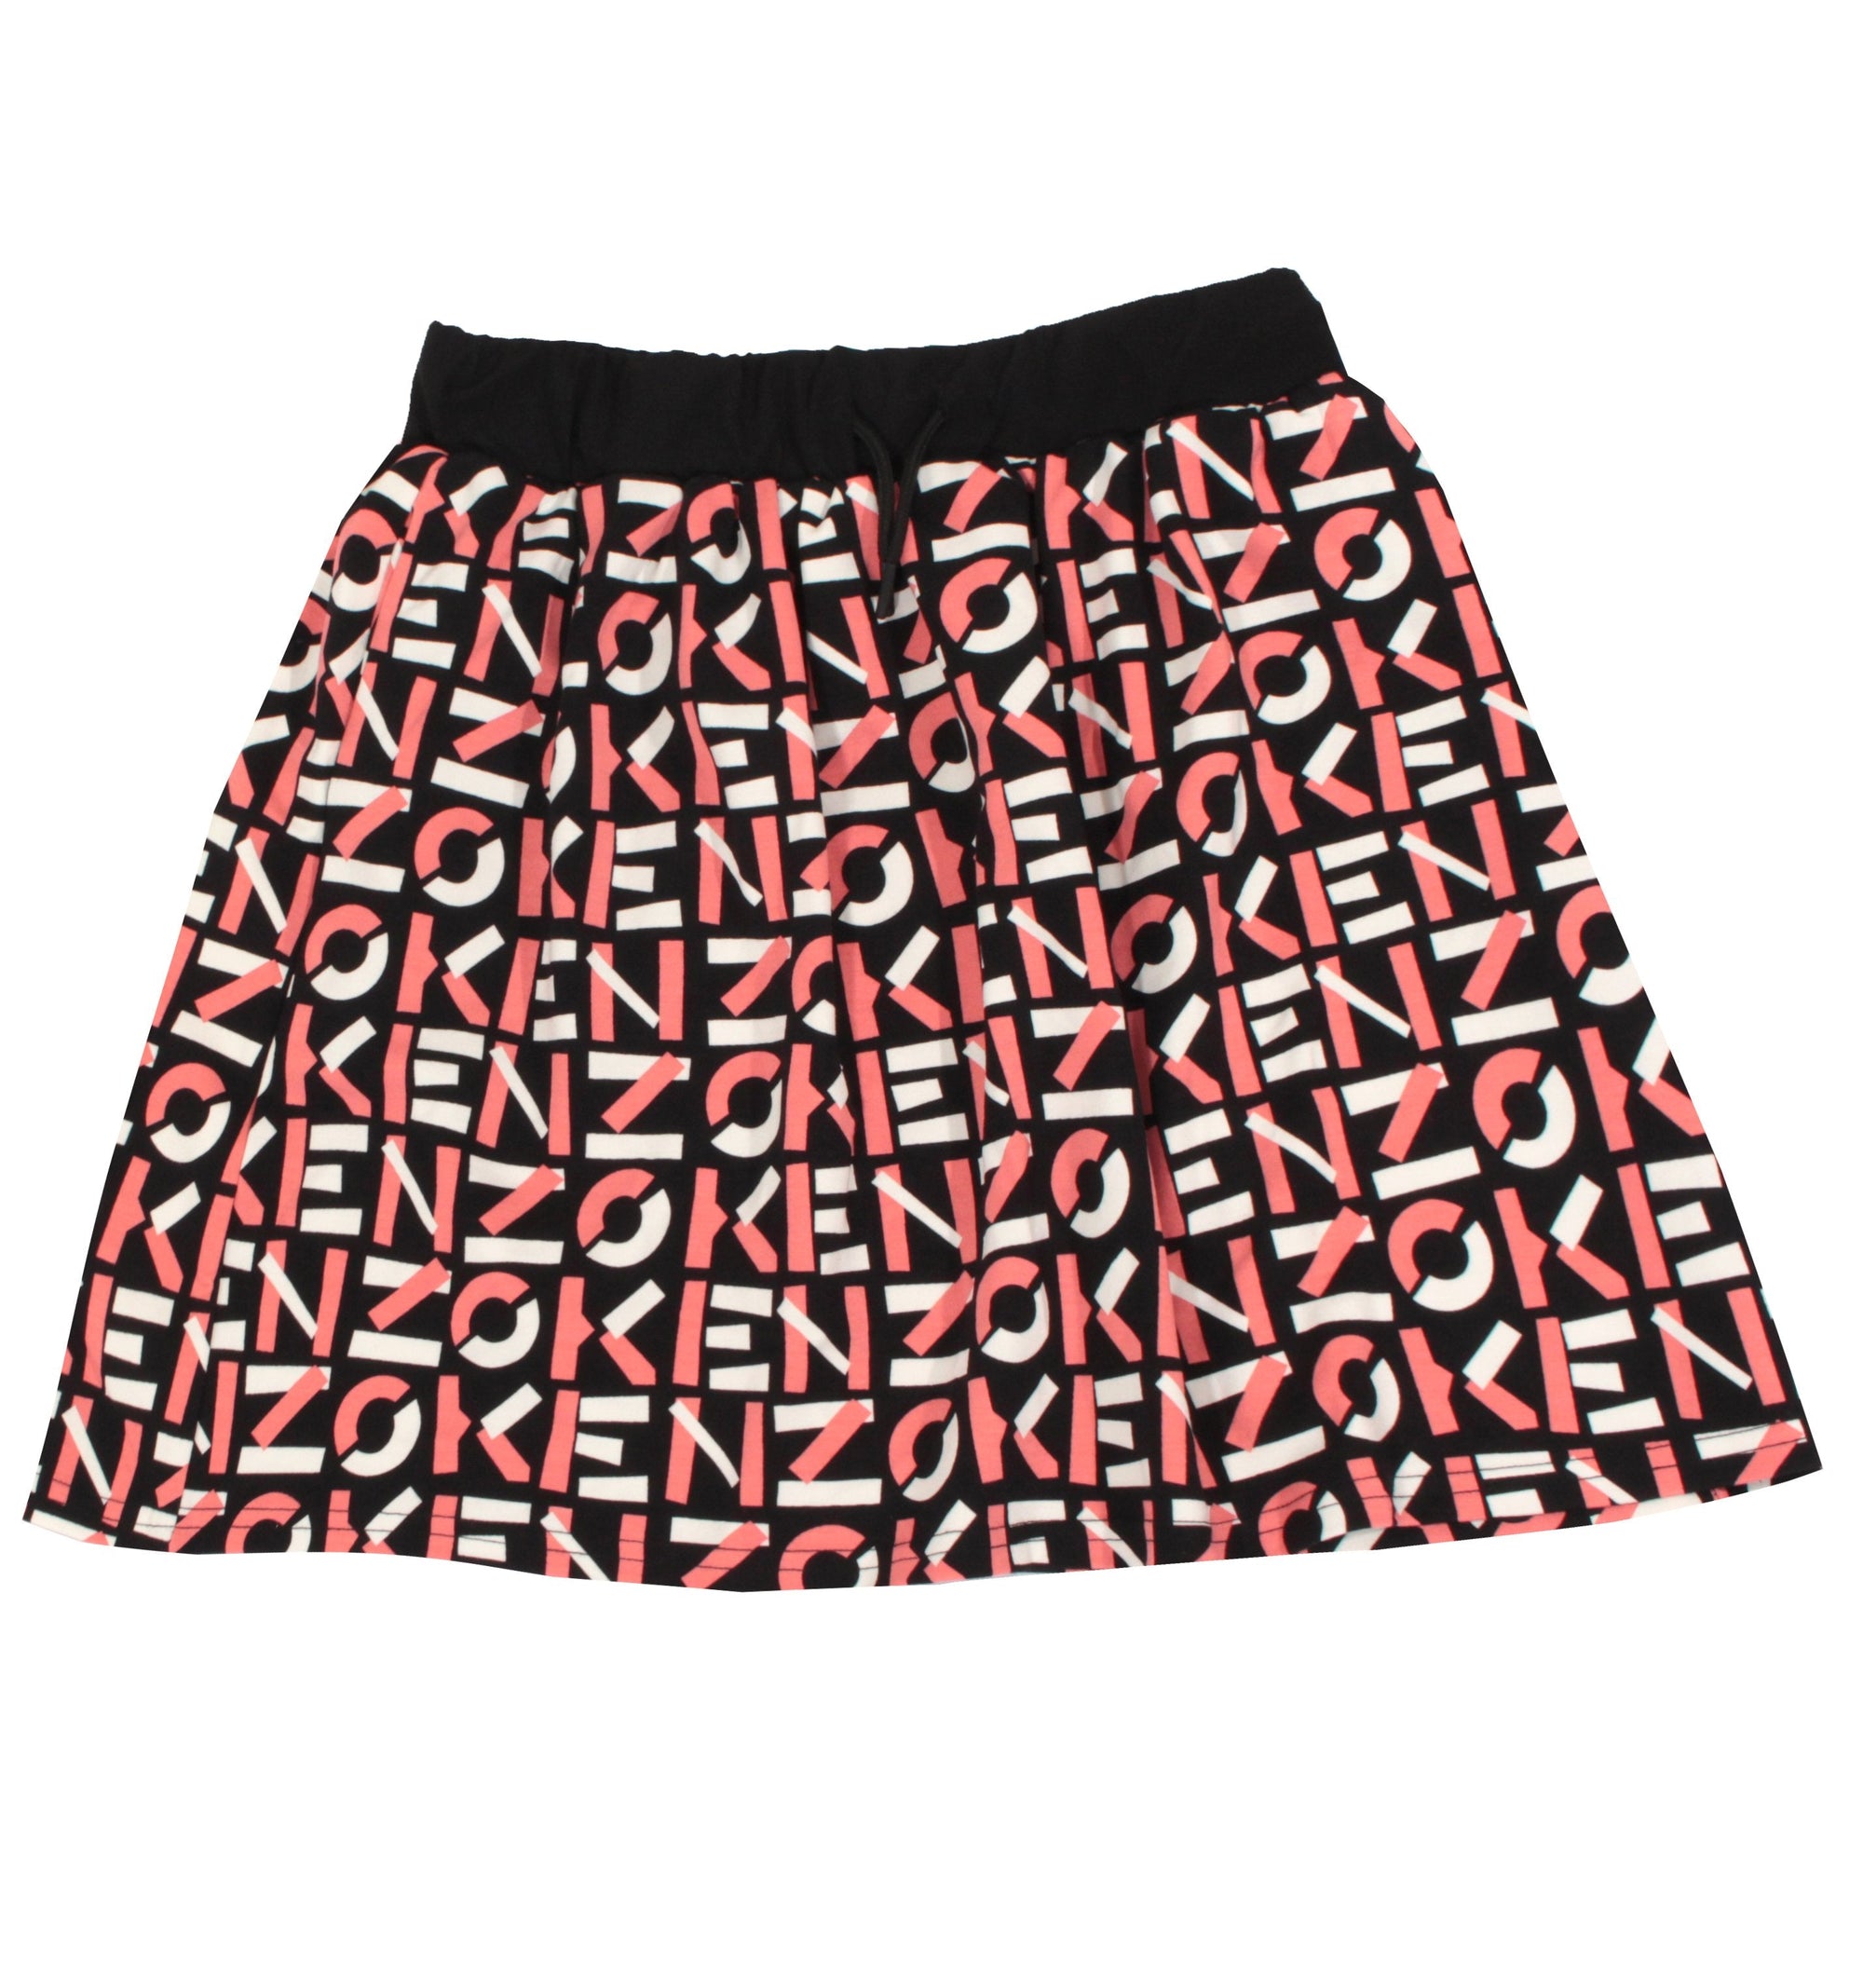 Kenzo Logo Skirt - Pink & Black